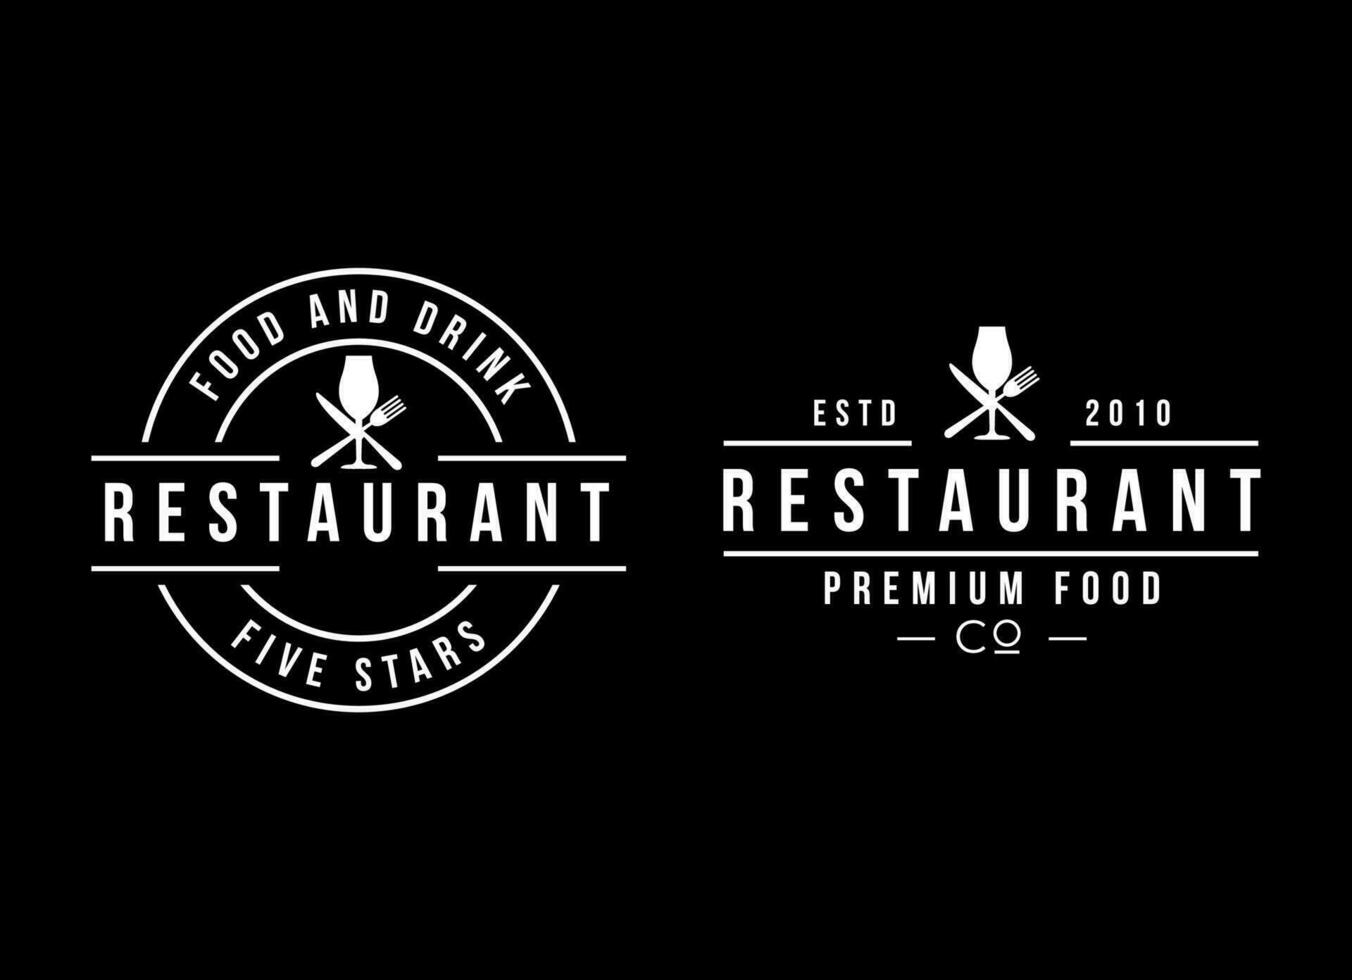 Jahrgang Restaurant Etikette Logo Design. retro Jahrgang Insignien, Logo, Etikette oder Abzeichen Vektor Design Element, Geschäft Zeichen Vorlage.